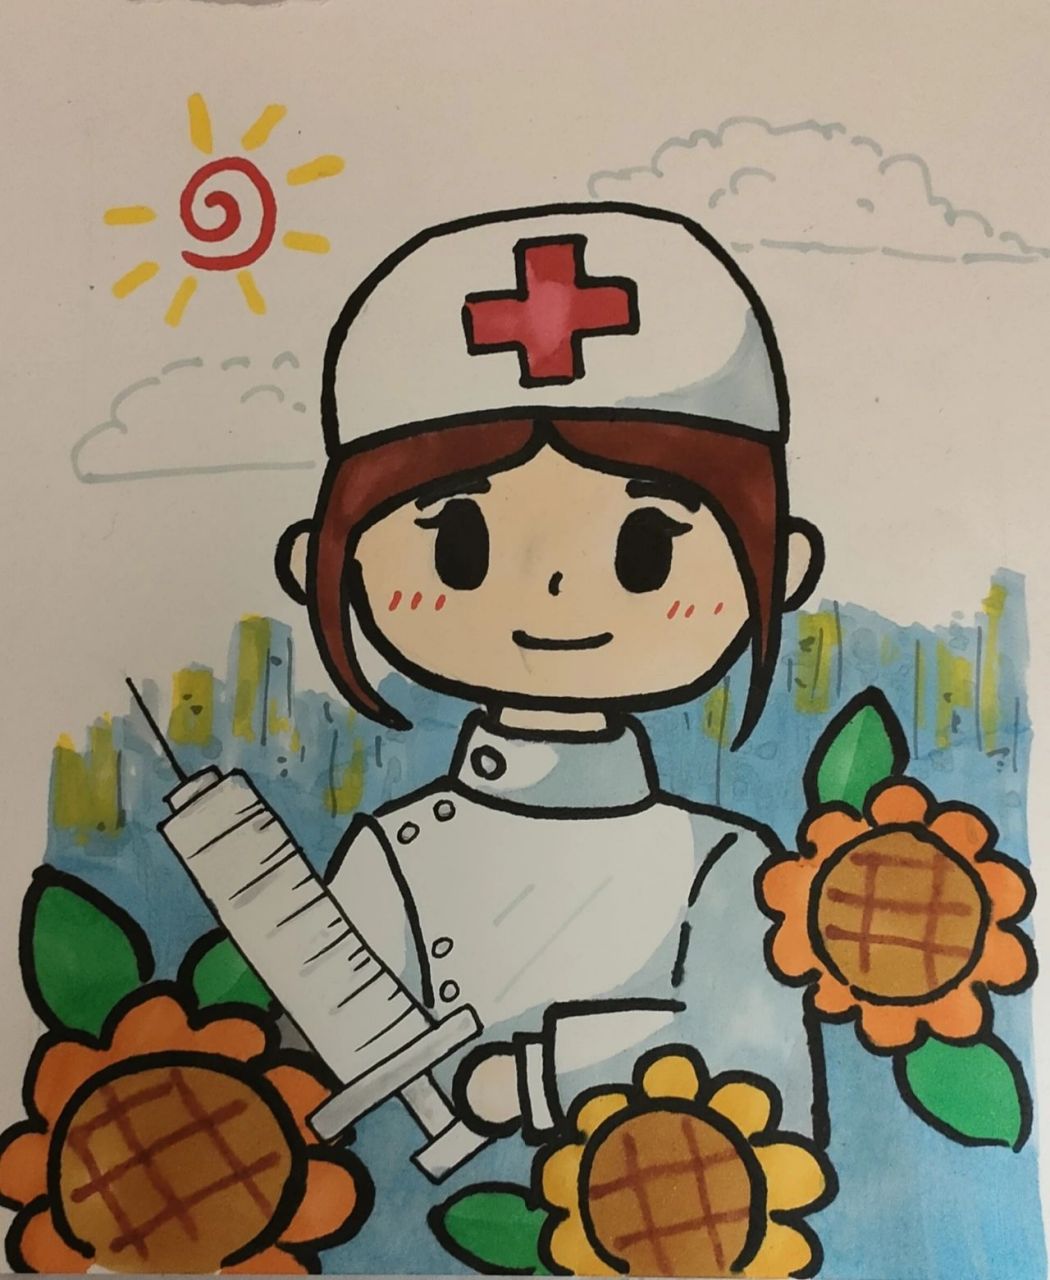 护士简笔画